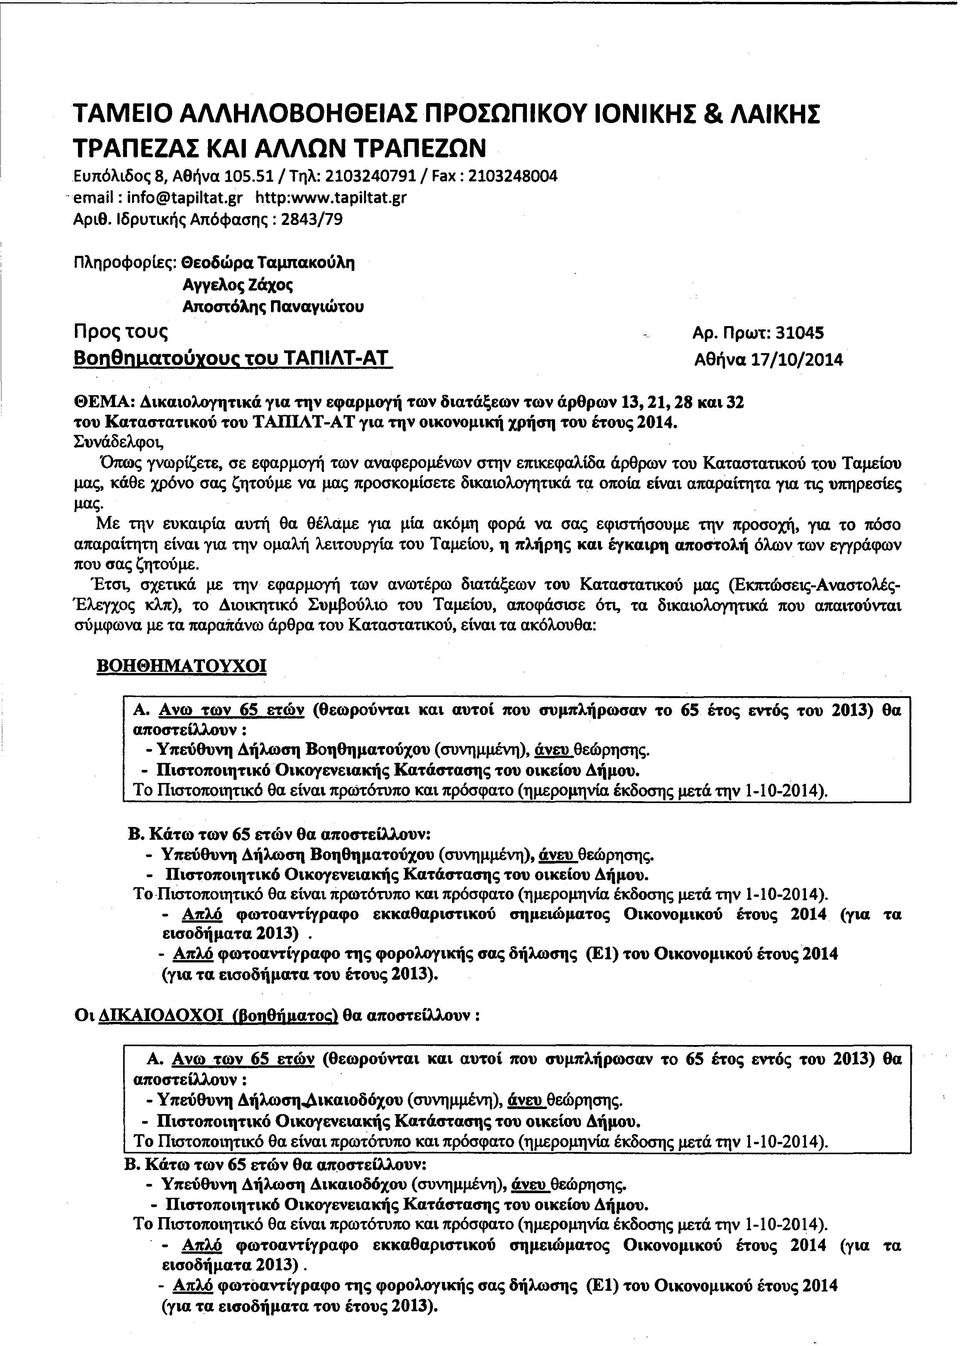 Πρωτ: 31045 BonOnuctTOUYOUC τ ο υ ΤΑΠ1ΛΤ-ΑΤ Αθήνα 17/10/2014 ΘΕΜΑ: Δικαιολογητικά για την εφαρμογή των διατάξεων των άρθρων 13,21,28 και 32 του Καταστατικού του ΤΑΠ1ΛΤ-ΑΤ για την οικονομική χρήση του